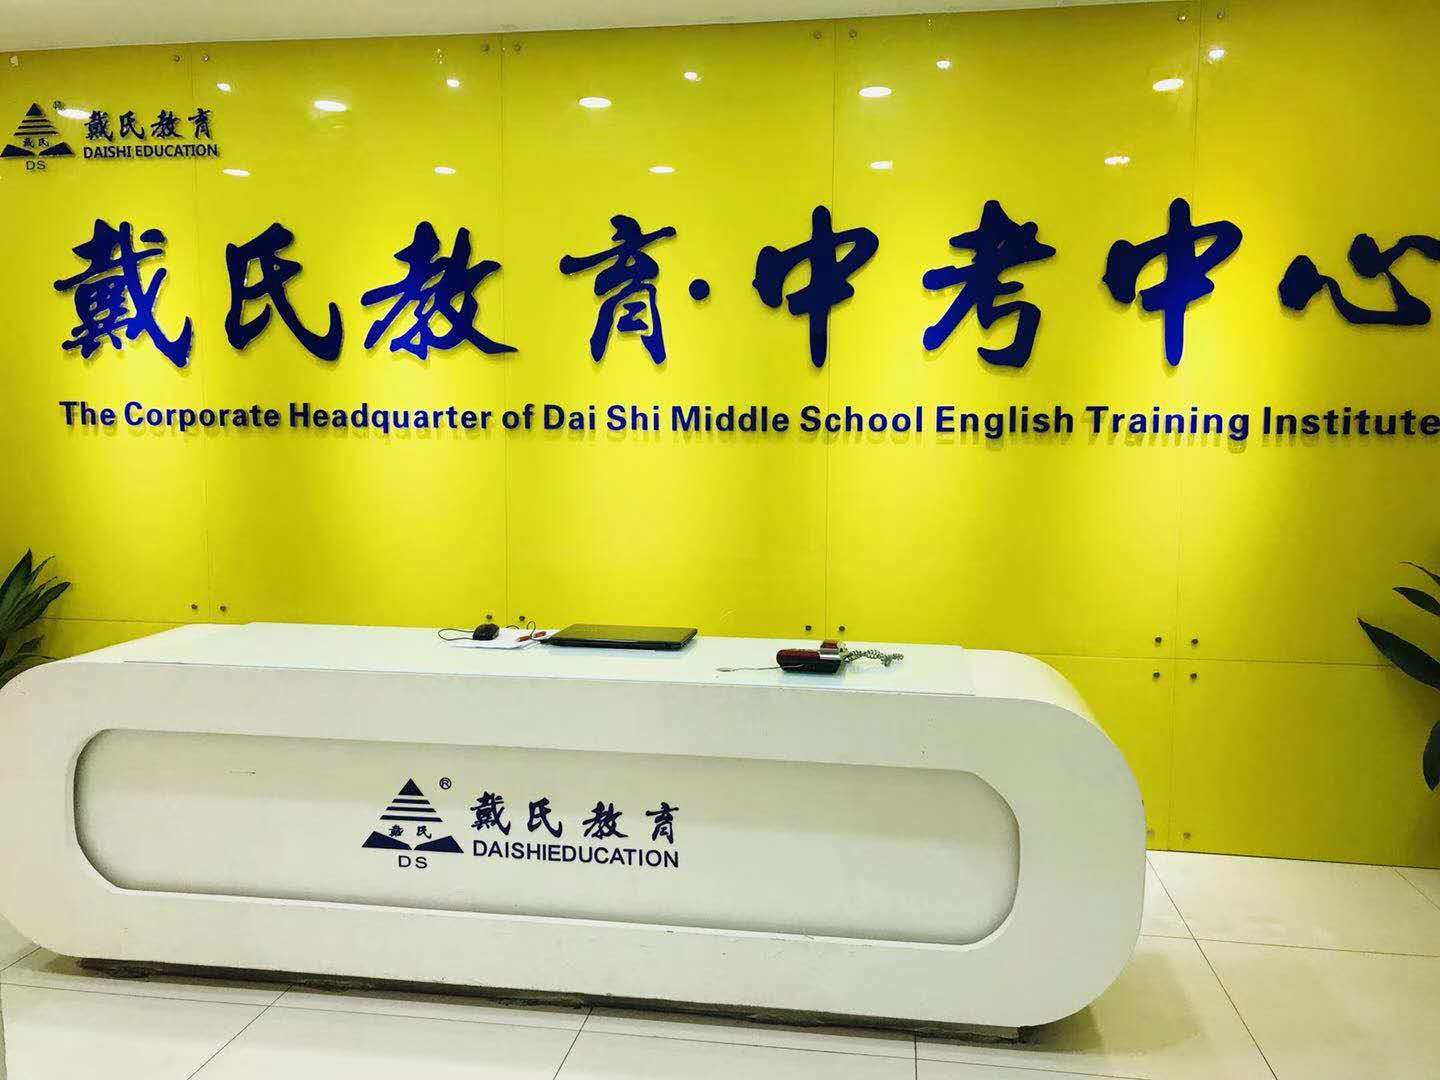 戴氏教育logo图片